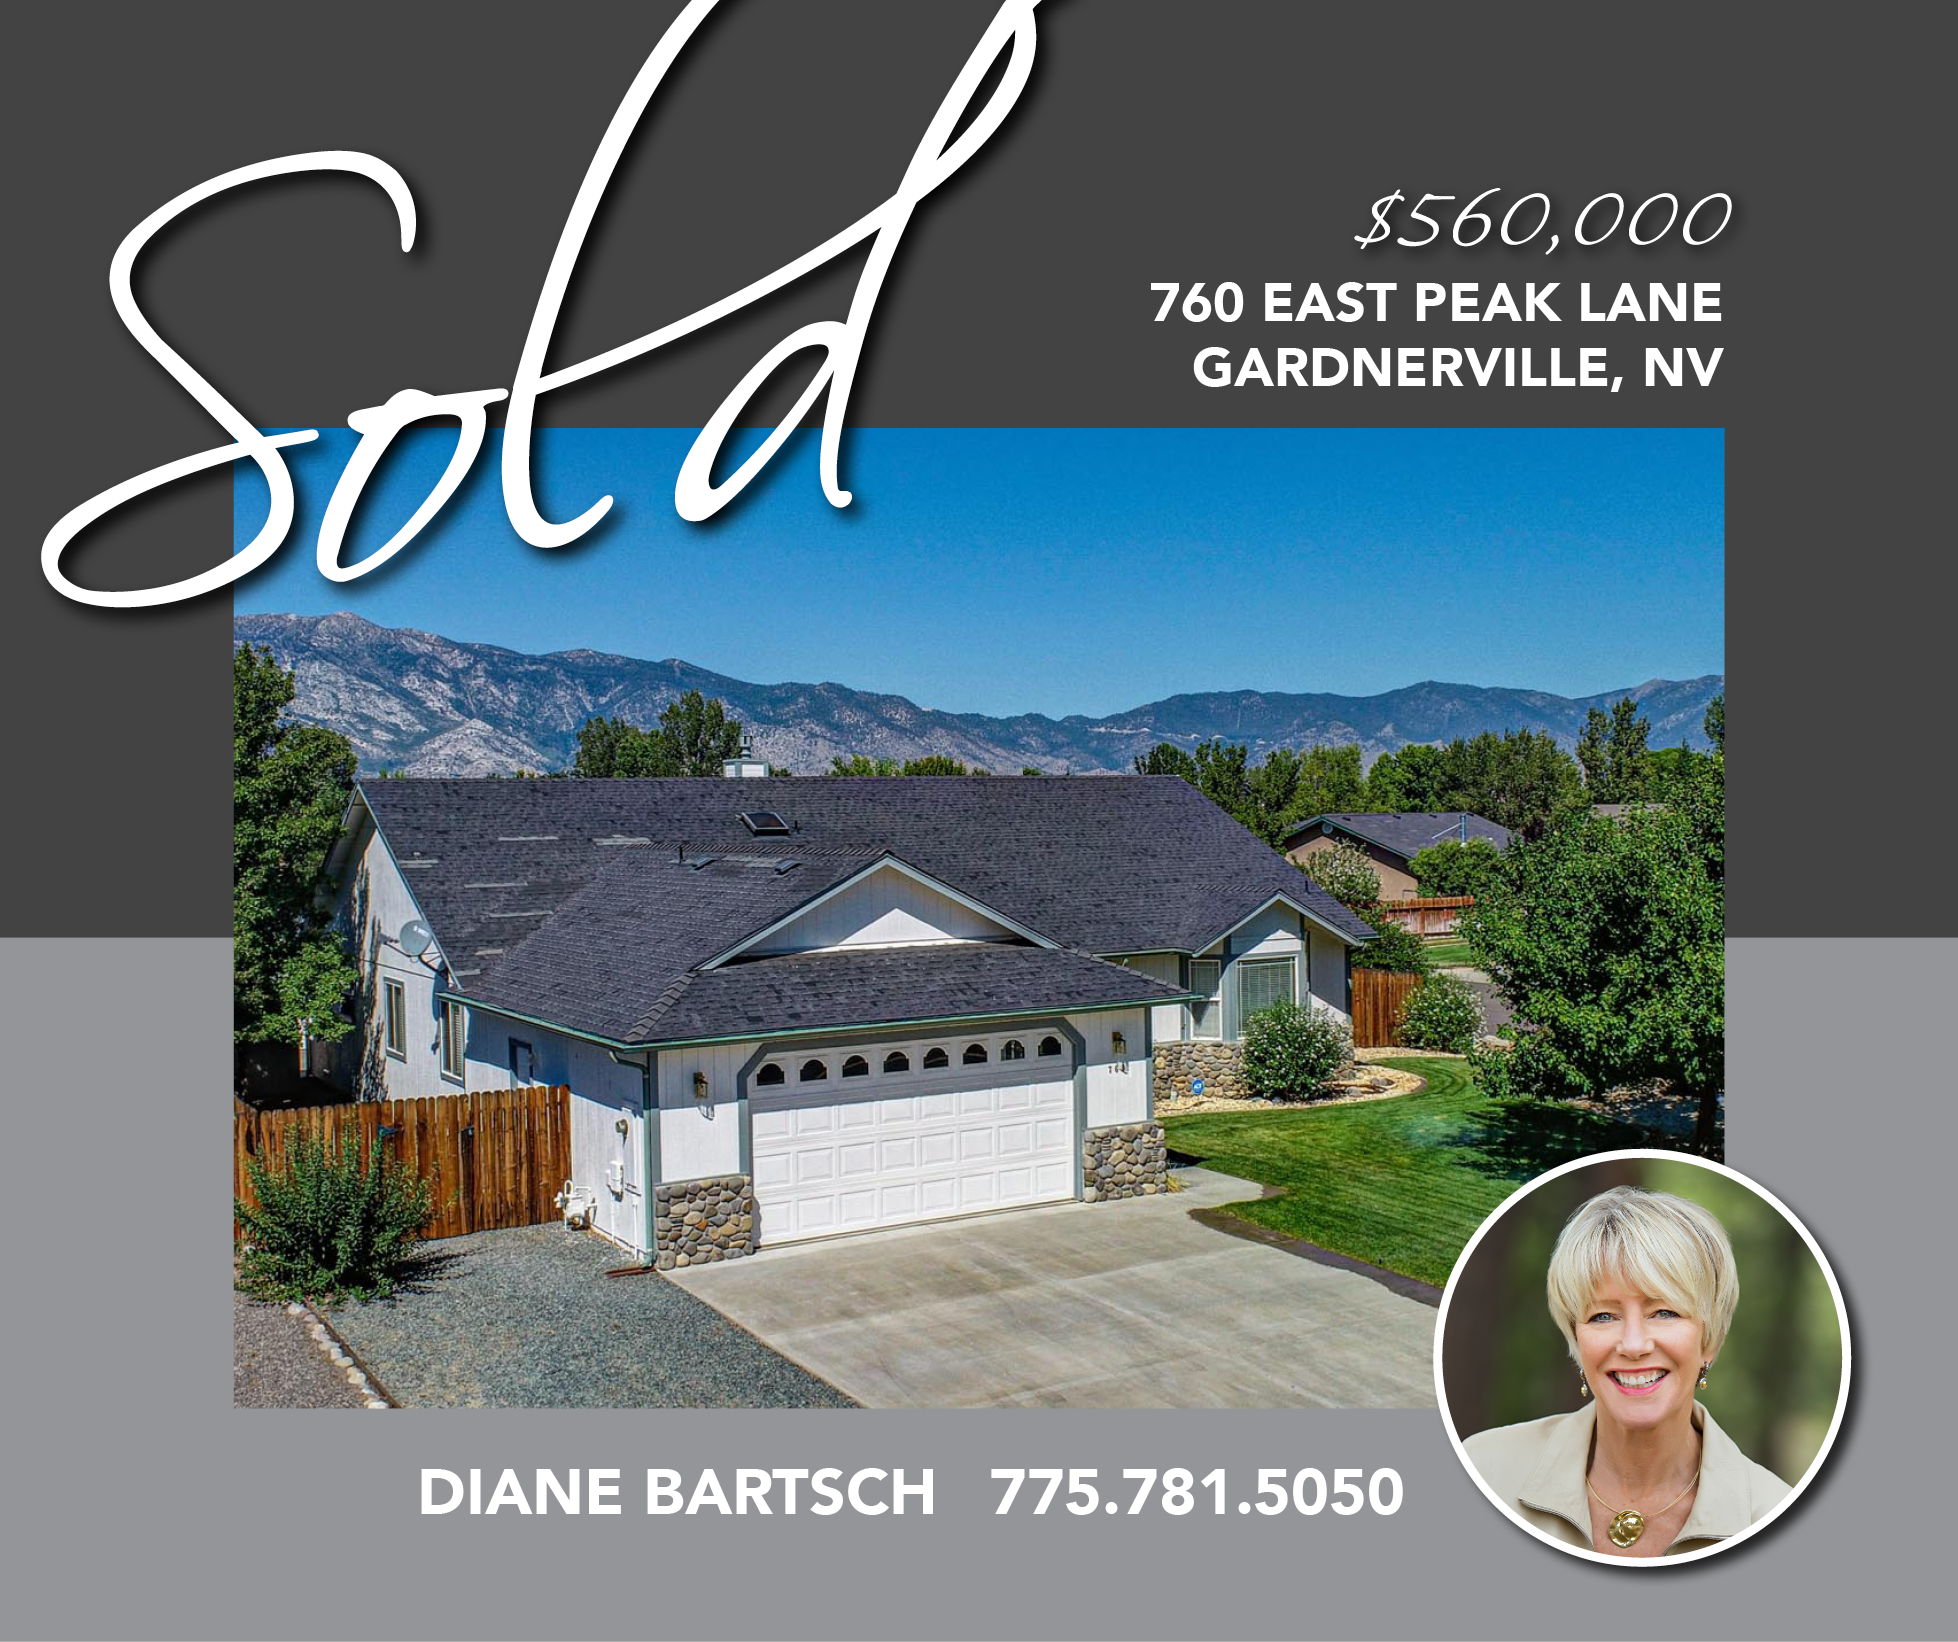 760 East Peak Lane sold for $560,000